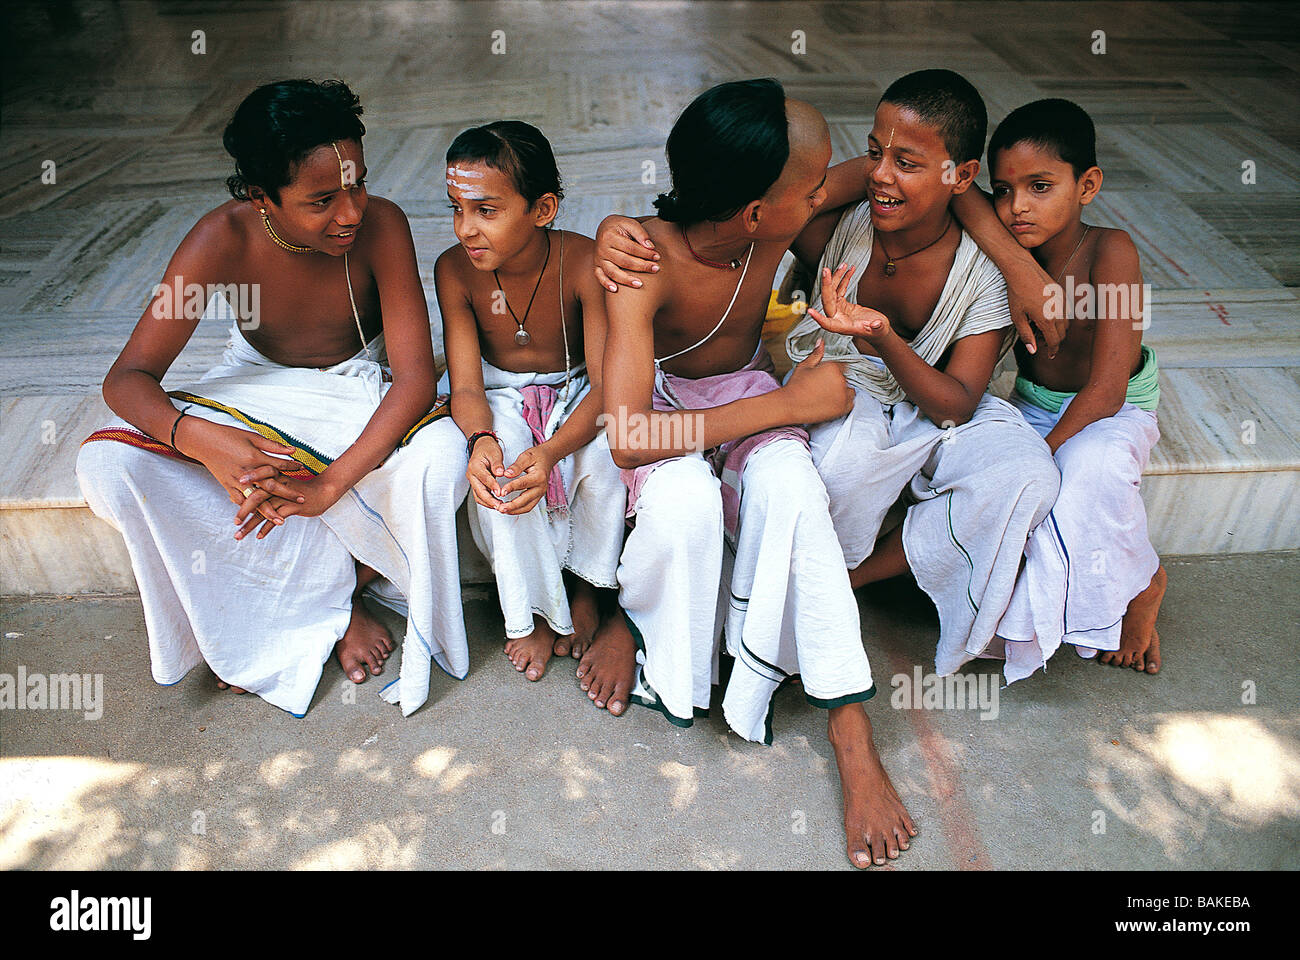 India, Tamil Nadu State, Kanchipuram, young brahmins inside the shankaracharya's ashram Stock Photo